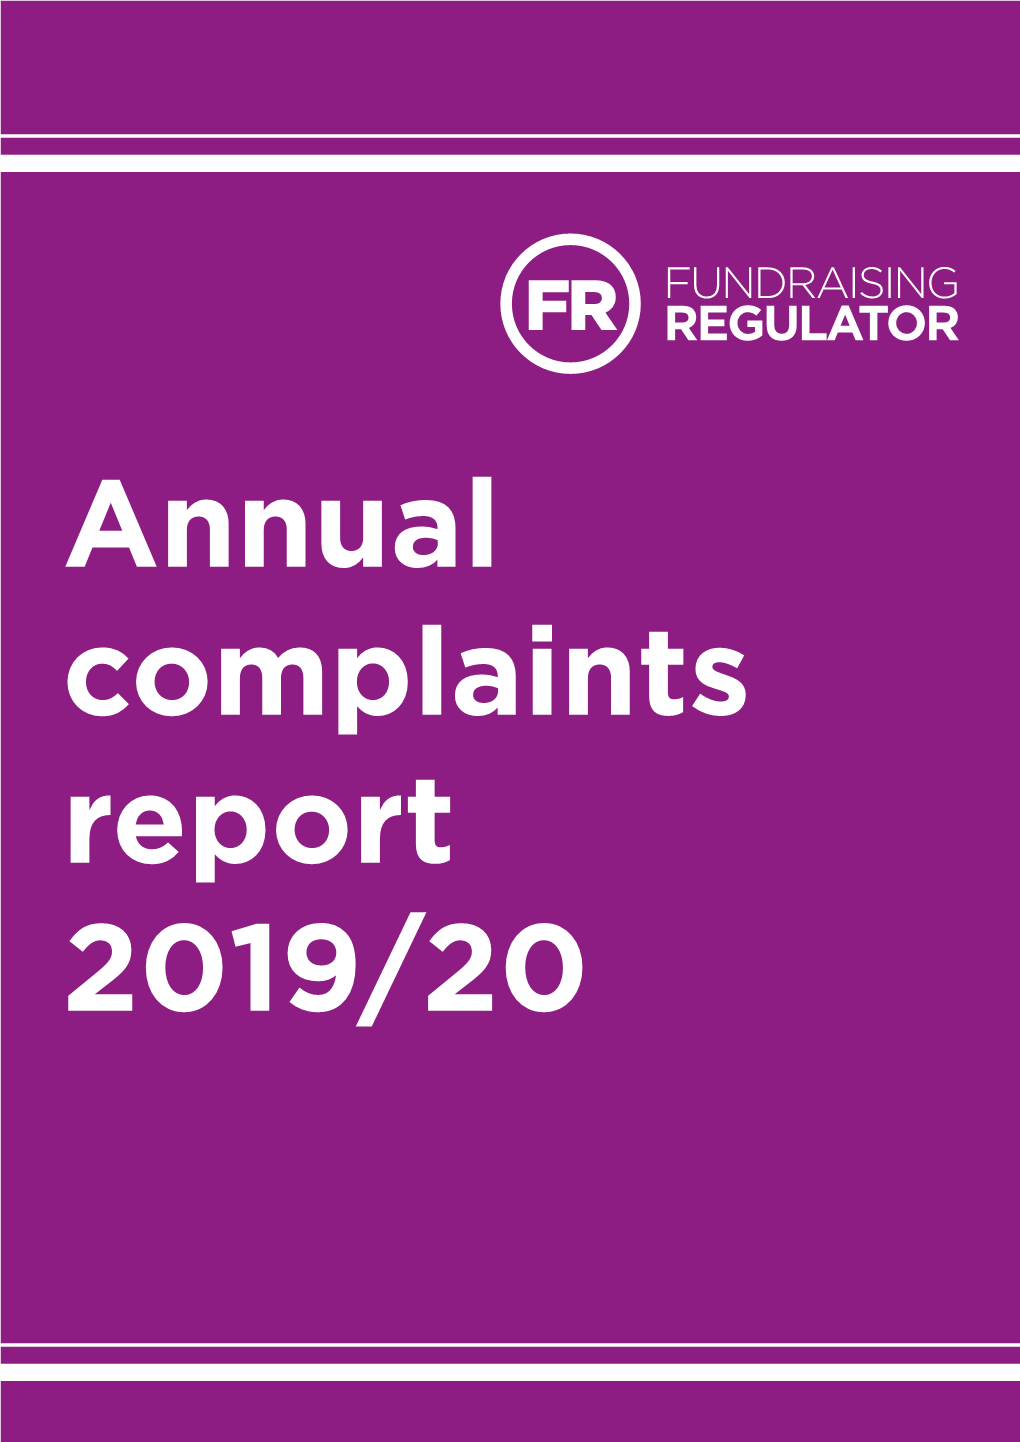 Annual Complaints Report 2019/20 Contents